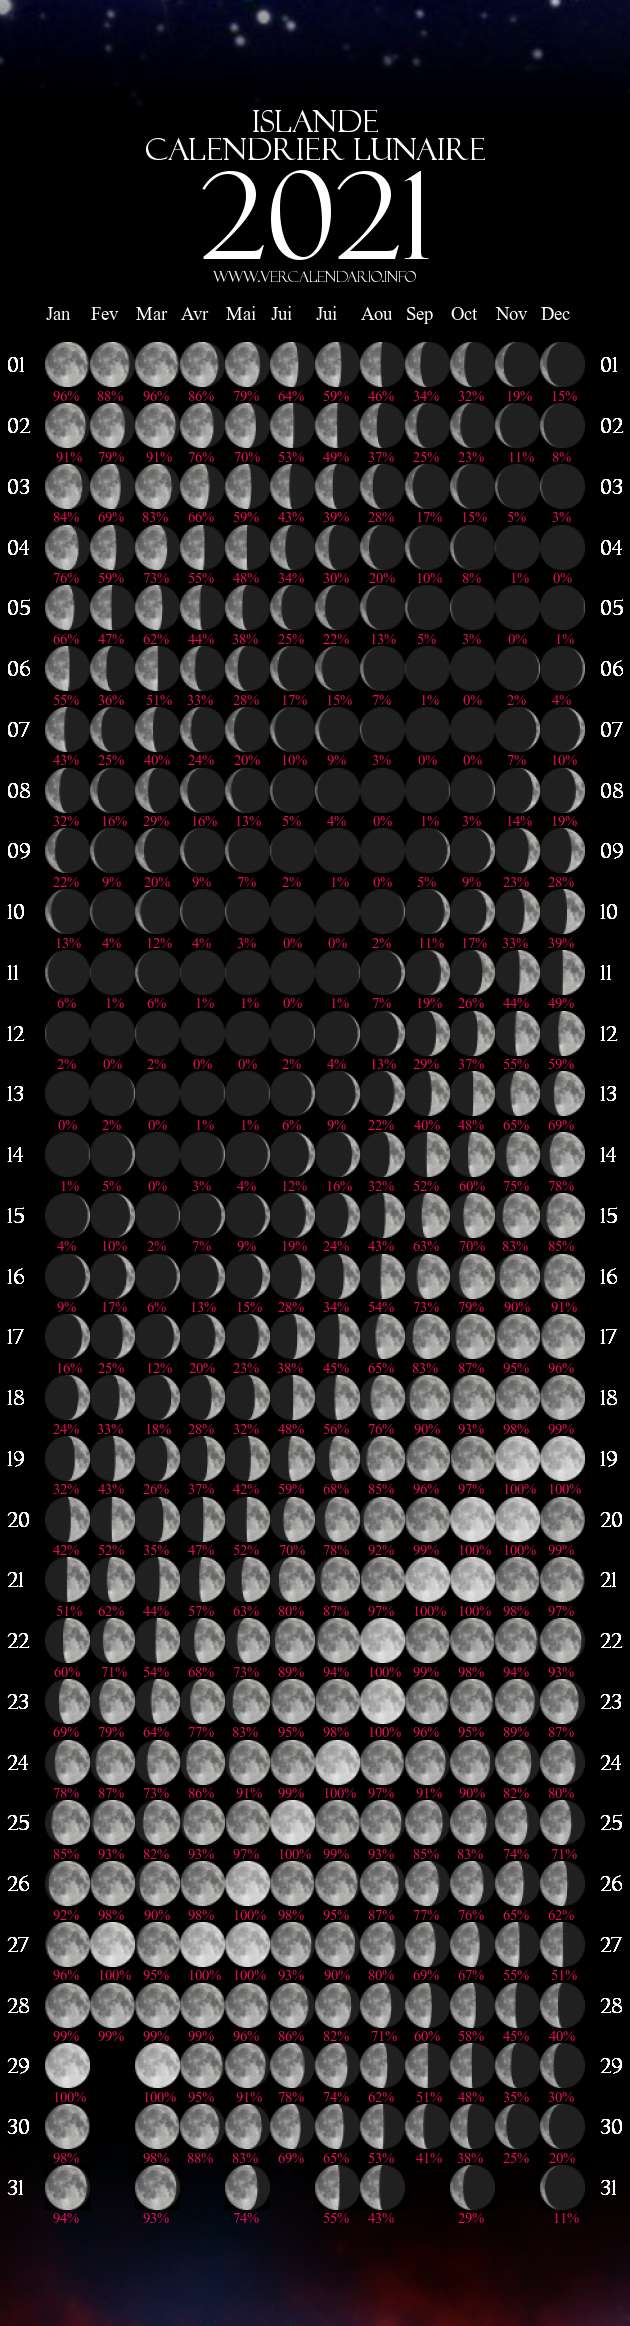 Calendrier De La Lune 2021 Année Lunaire 2021 (Islande)